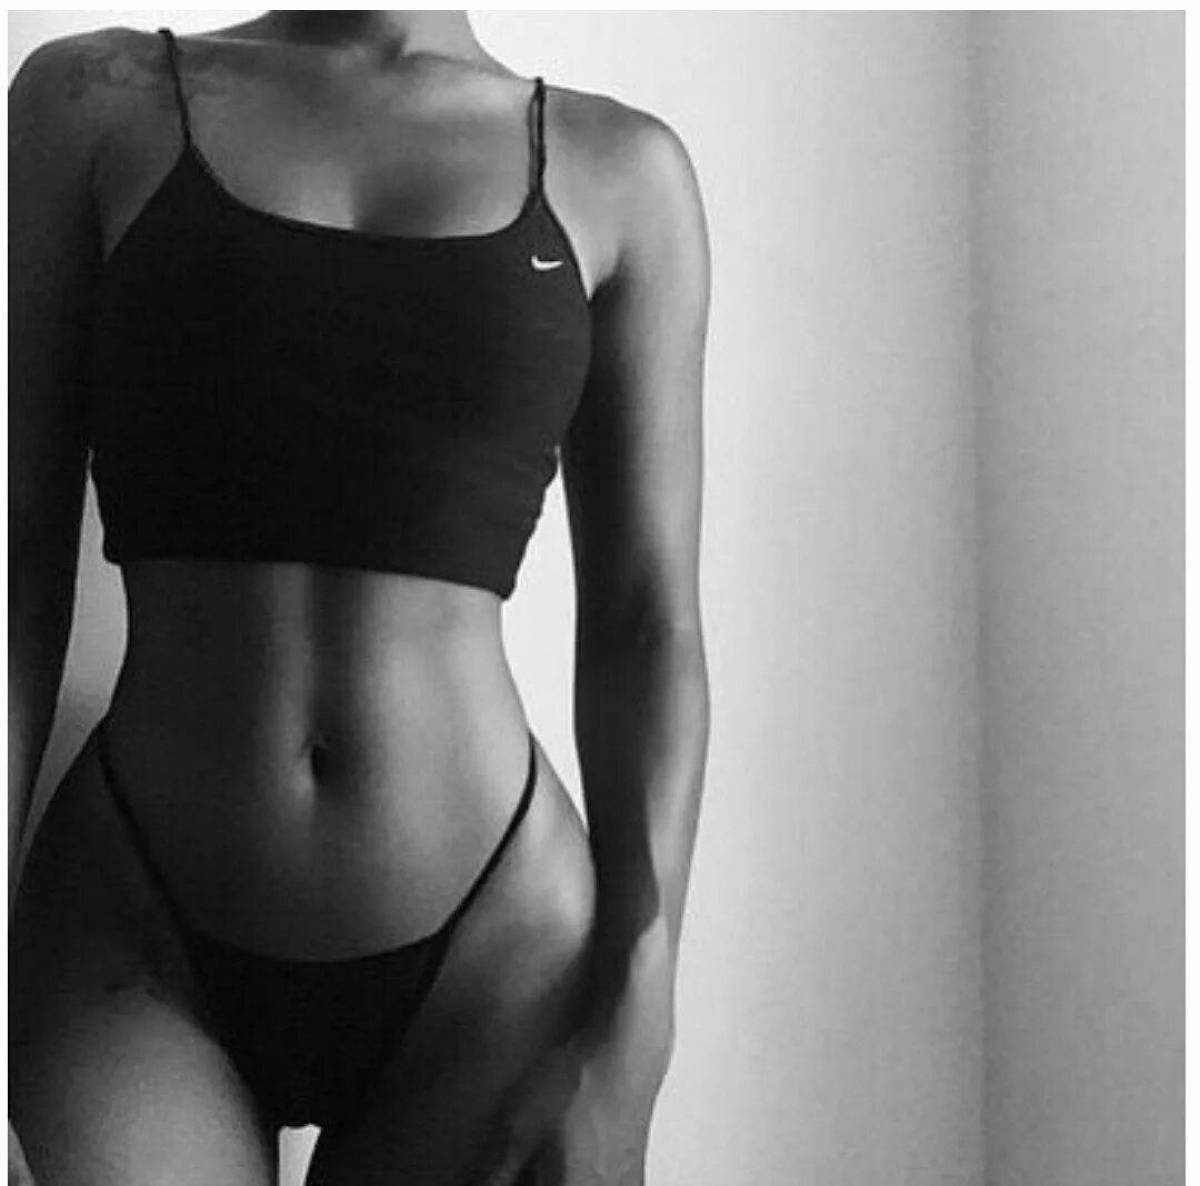 Kvpv body. Стройное тело. Красивая женская фигура. Красивое Стройное тело. Красивая спортивная женская фигура.